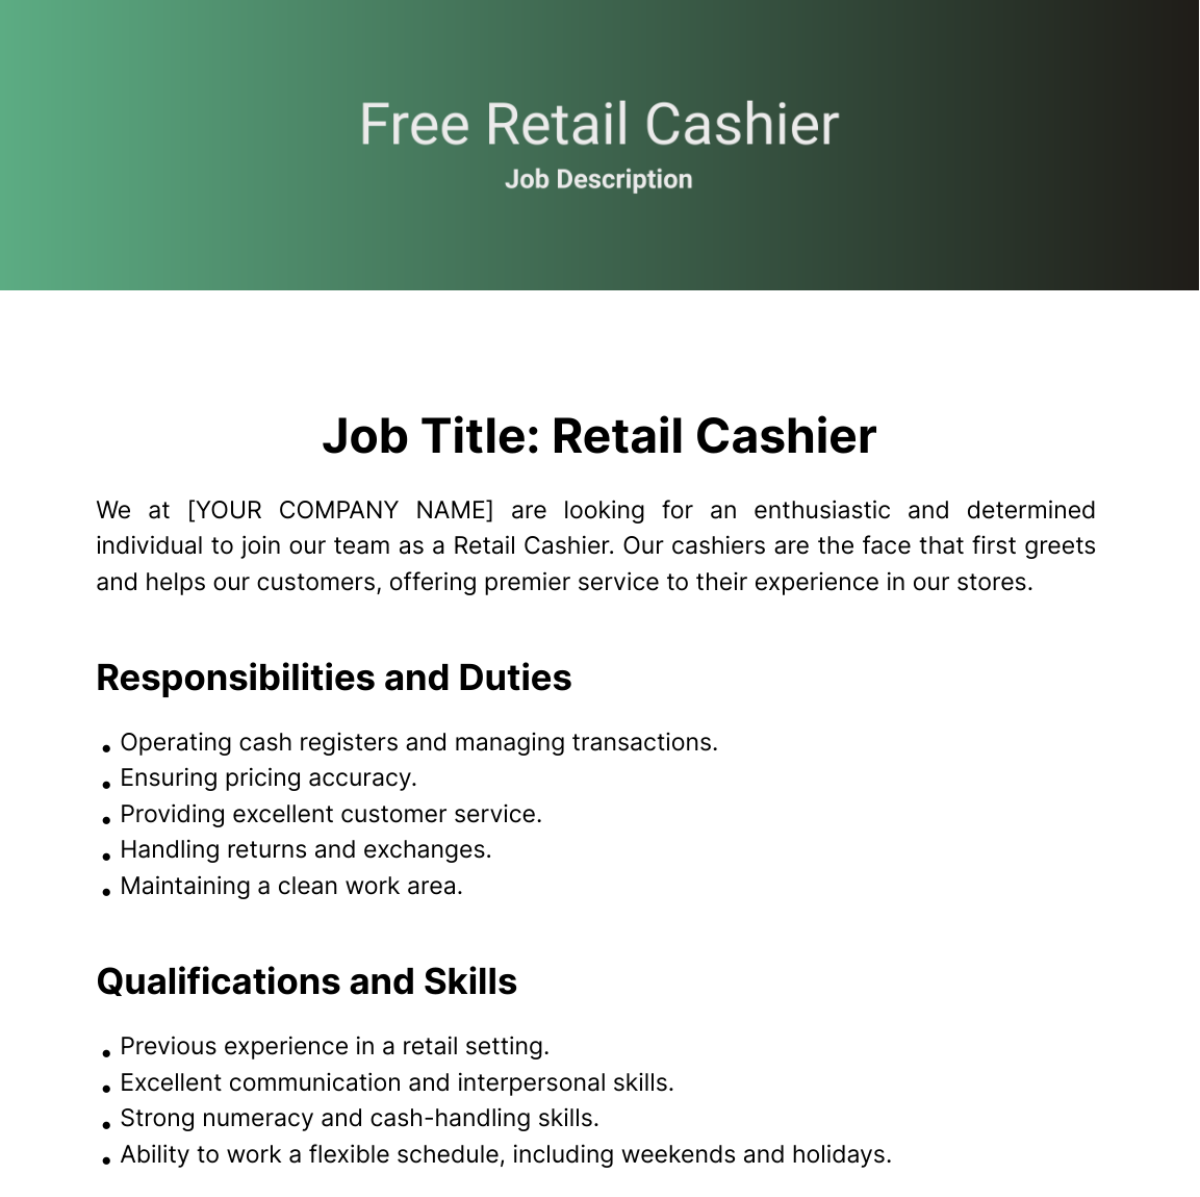 Free Retail Cashier Job Description Template